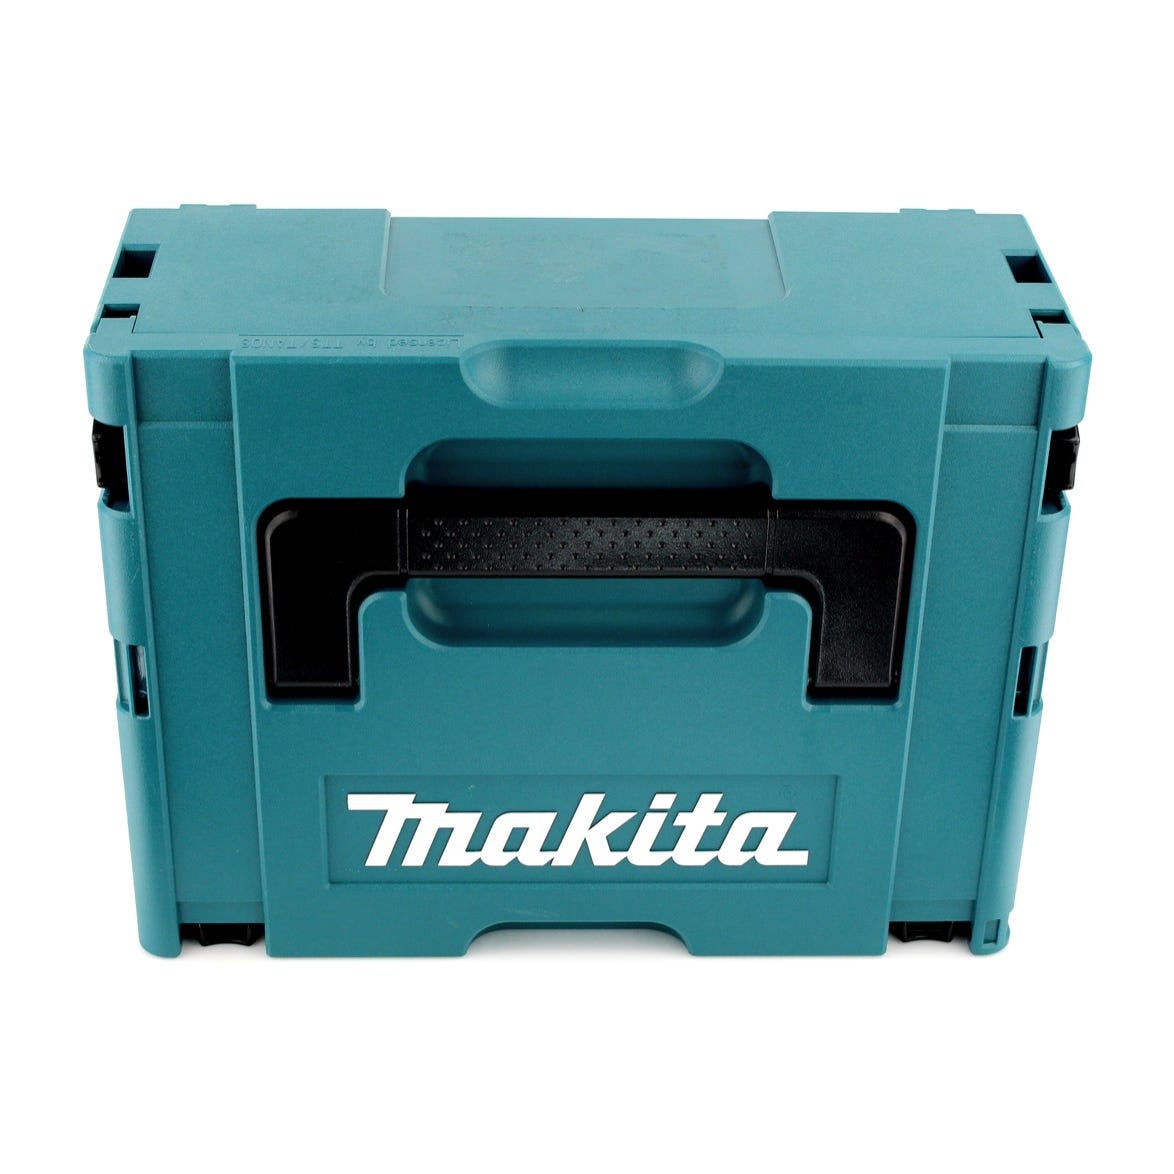 Makita DTD 155 RT1 Visseuse à percussion sans fil 18 V Brushless Li-Ion en Makpac + 1 x BL1850 5,0 Ah batterie - sans chargeur 2